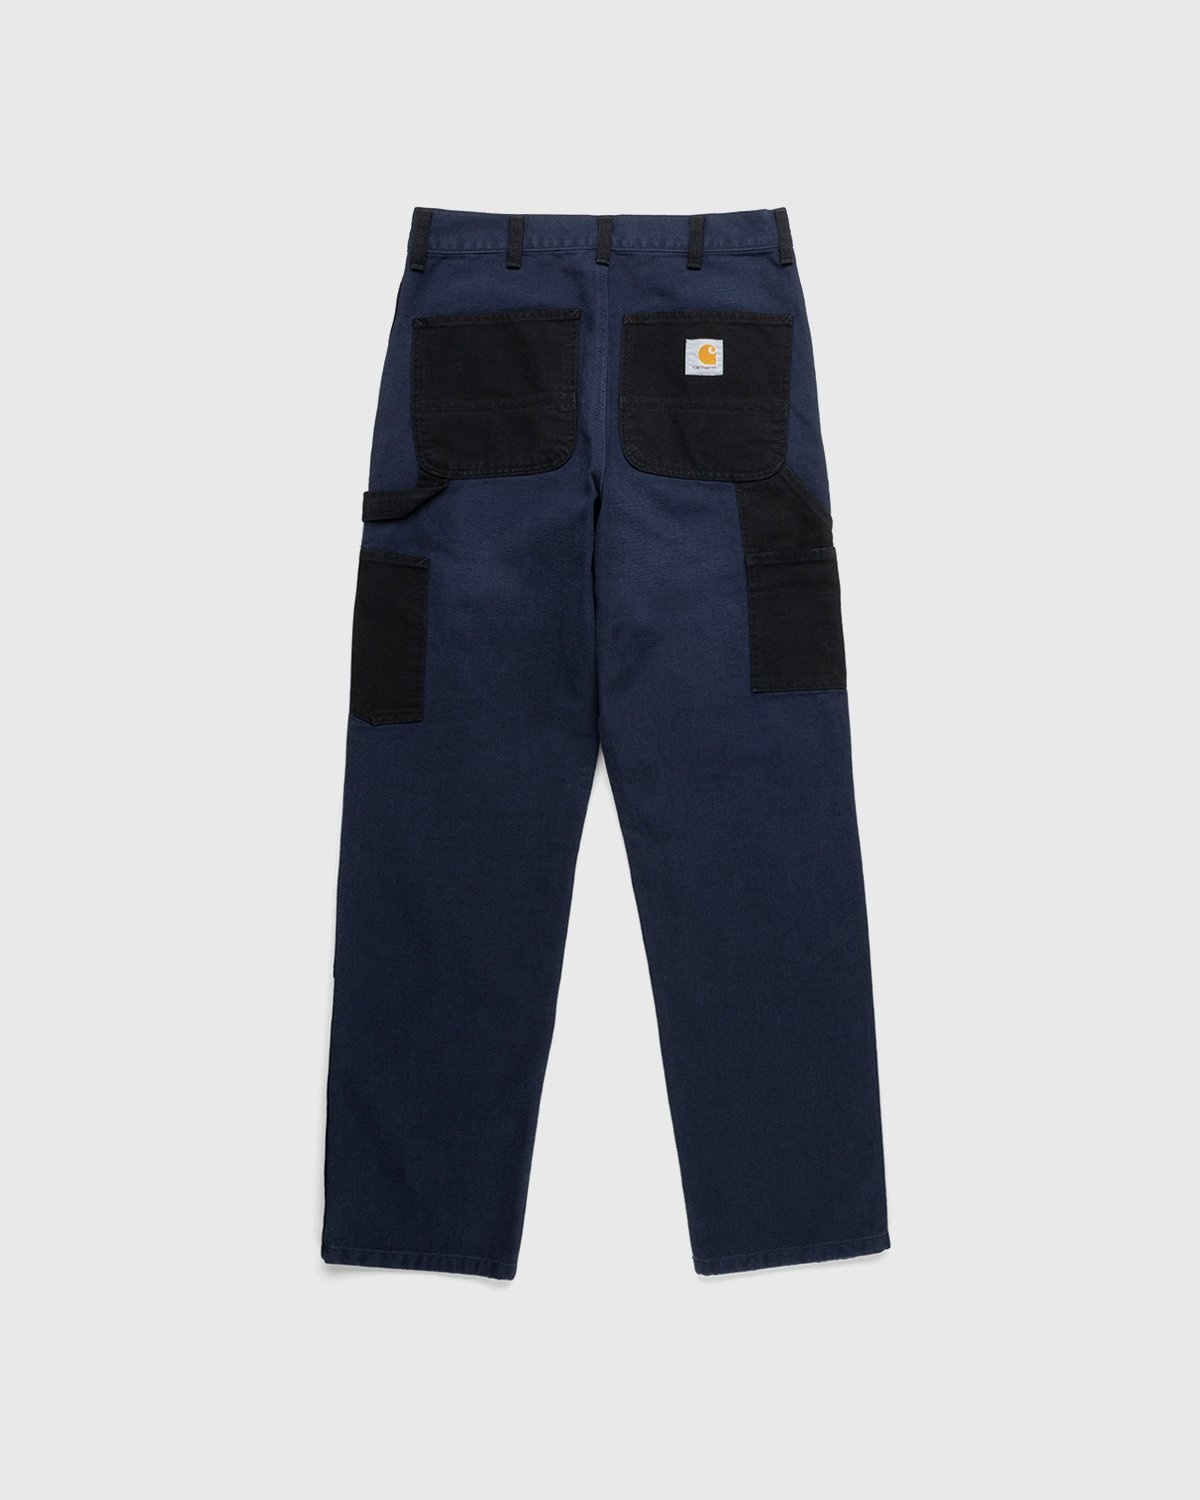 Carhartt WIP – Double Knee Pant Dark Navy - Pants - Blue - Image 2